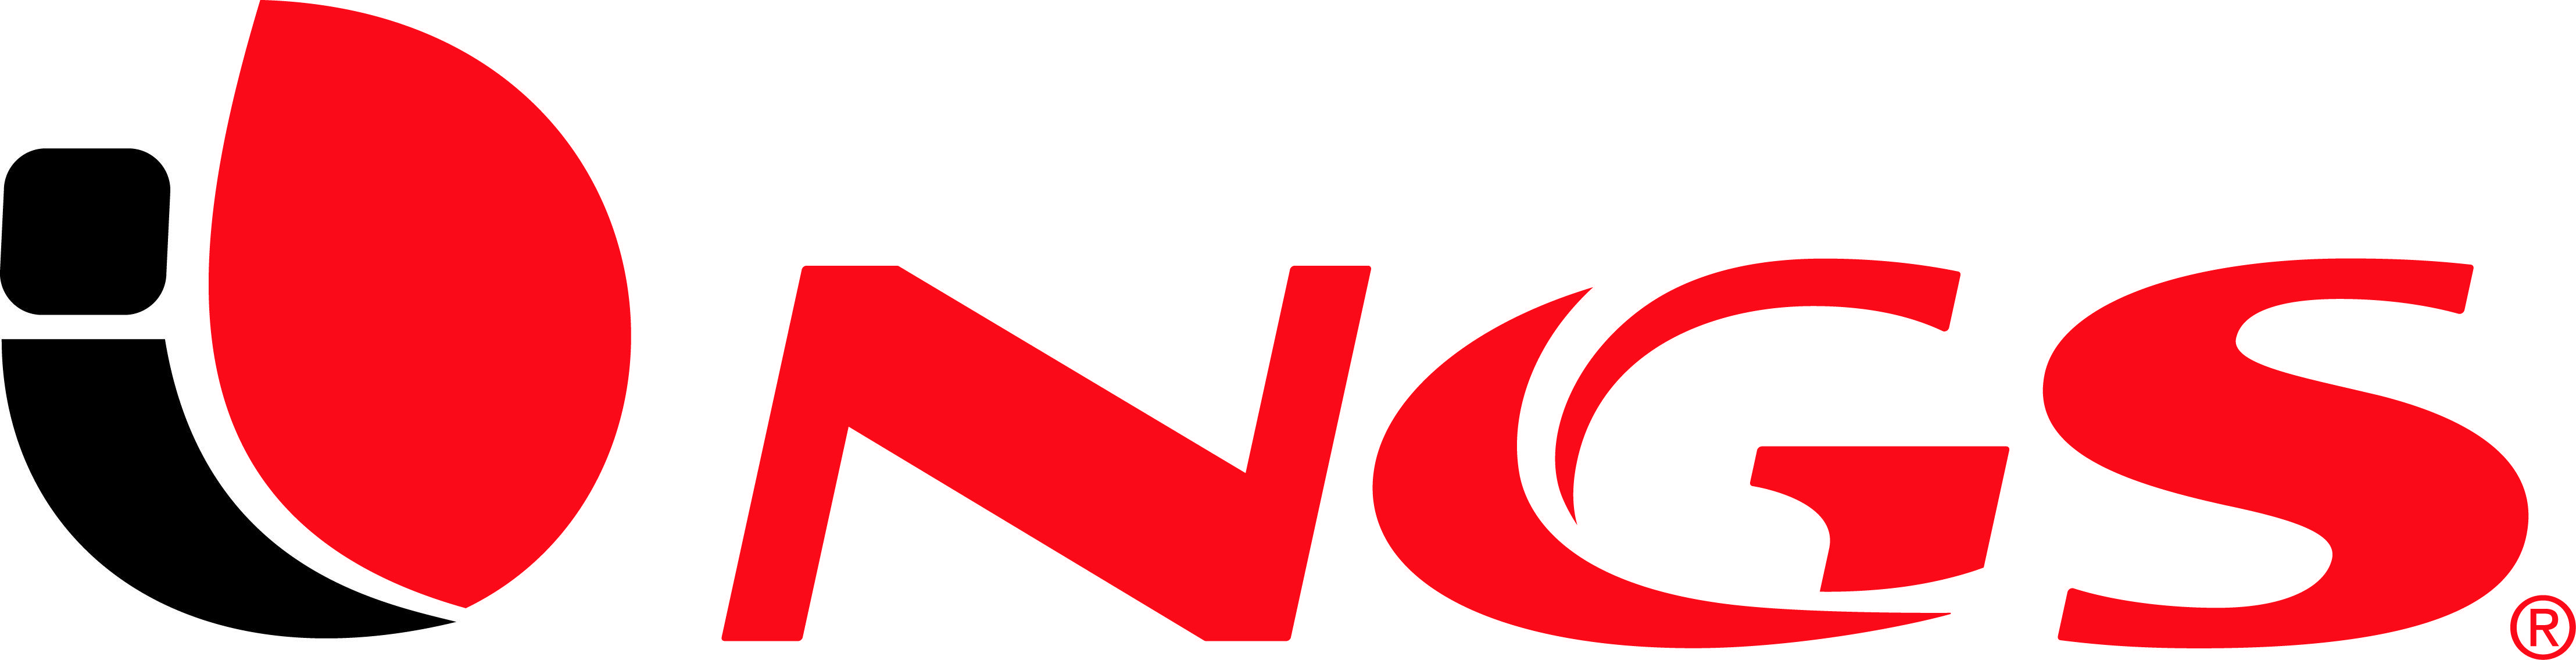 NGS Logo - LOGOS - NGS